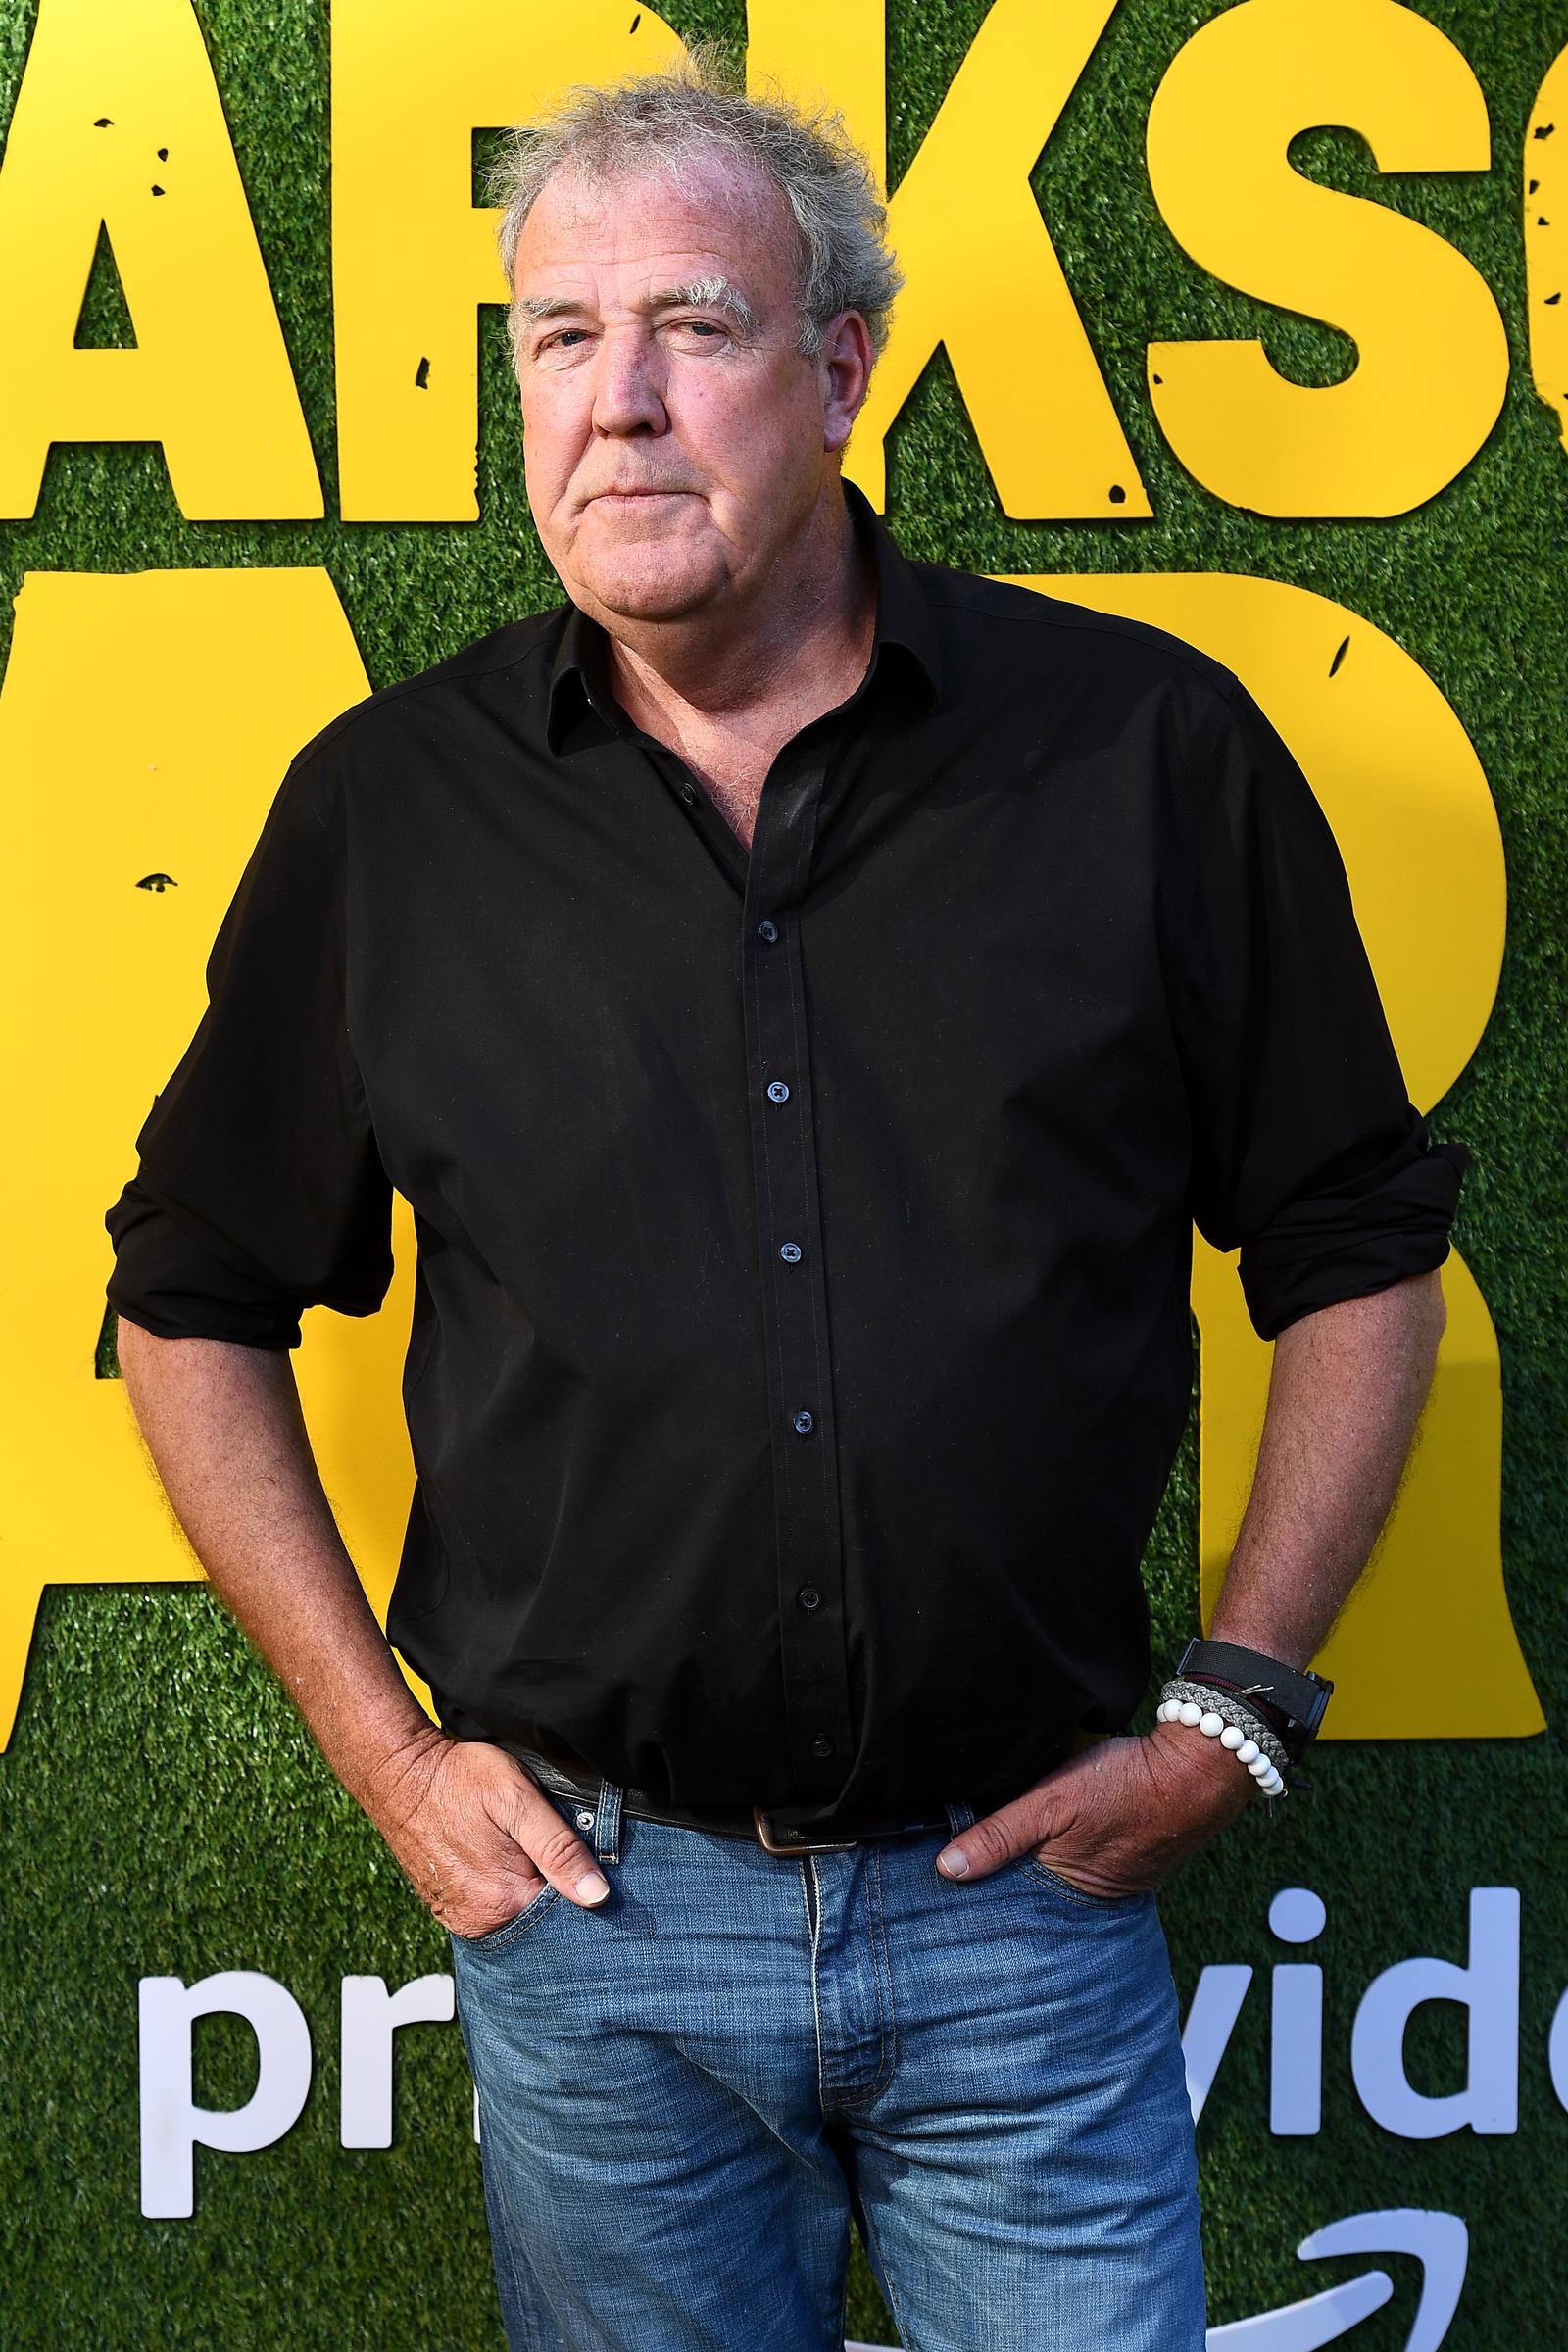 Jeremy Clarkson lors du photocall de "La ferme de Clarkson" le 9 juin 2021 à Londres, Angleterre | Source : Getty Images